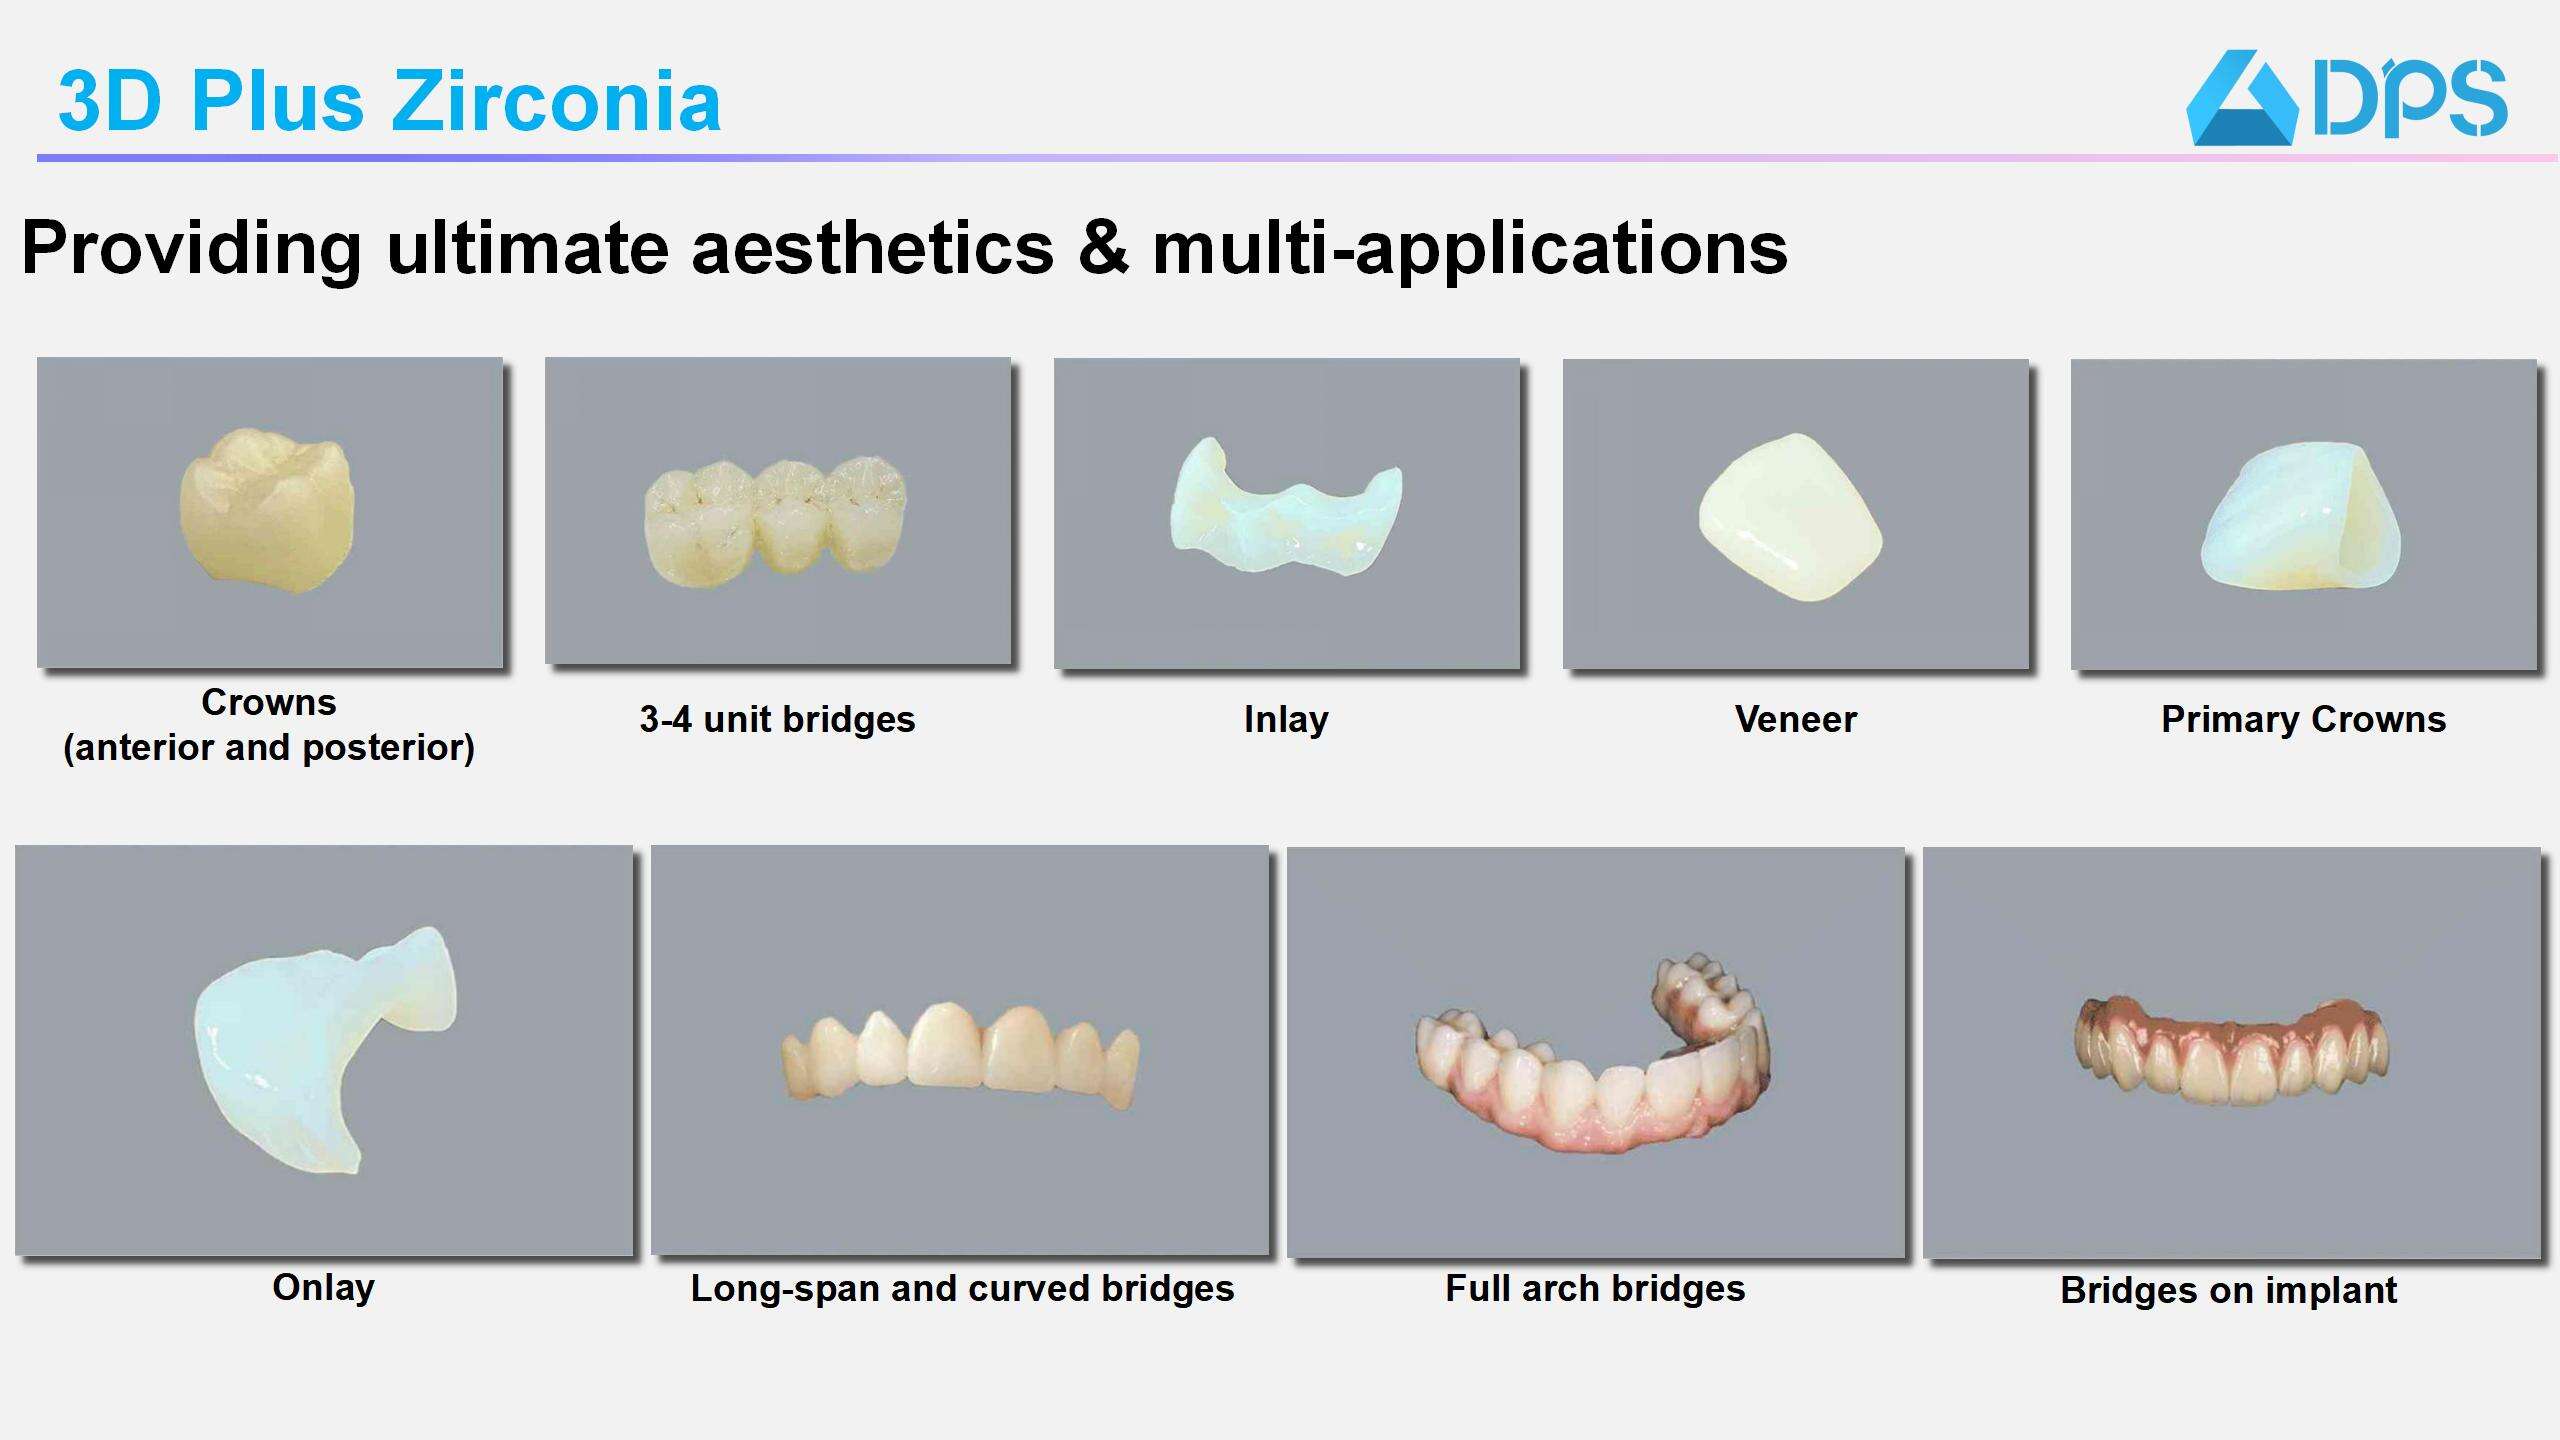 3D Plus Dental Zirconia Block High Premium Multi-layer supplier